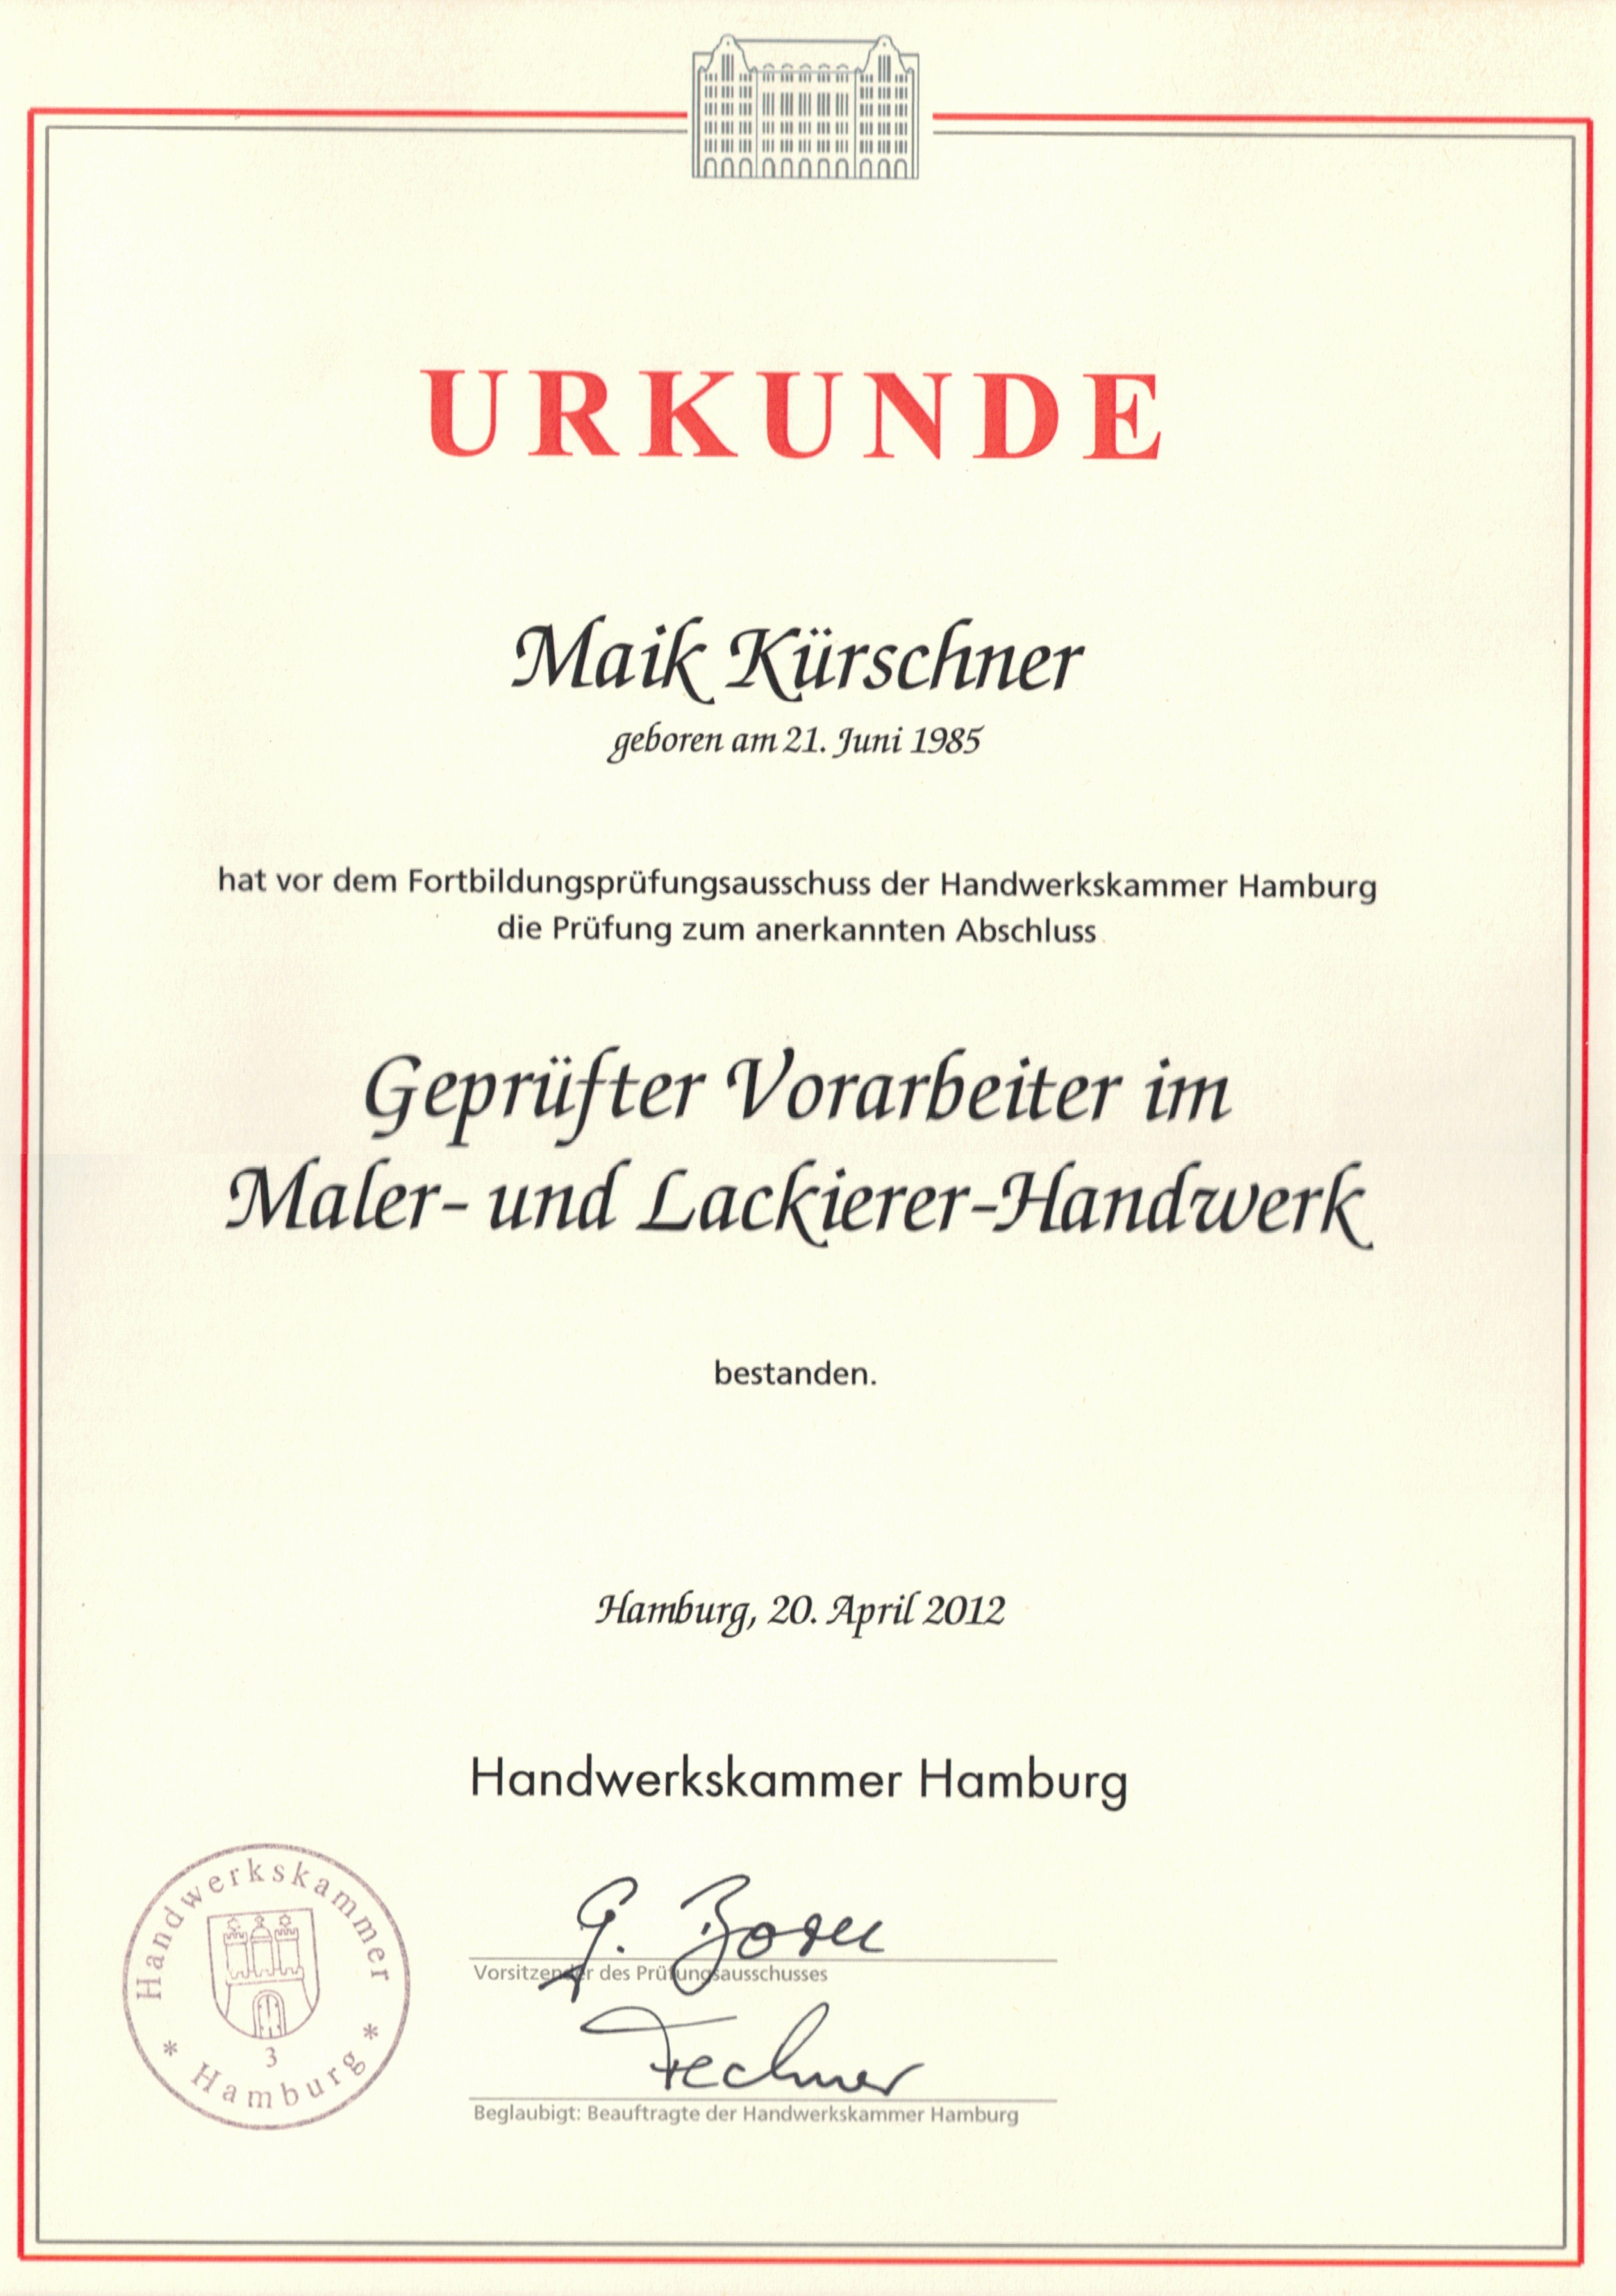 maler-wedel-hamburg-urkunde-maik-kirschner